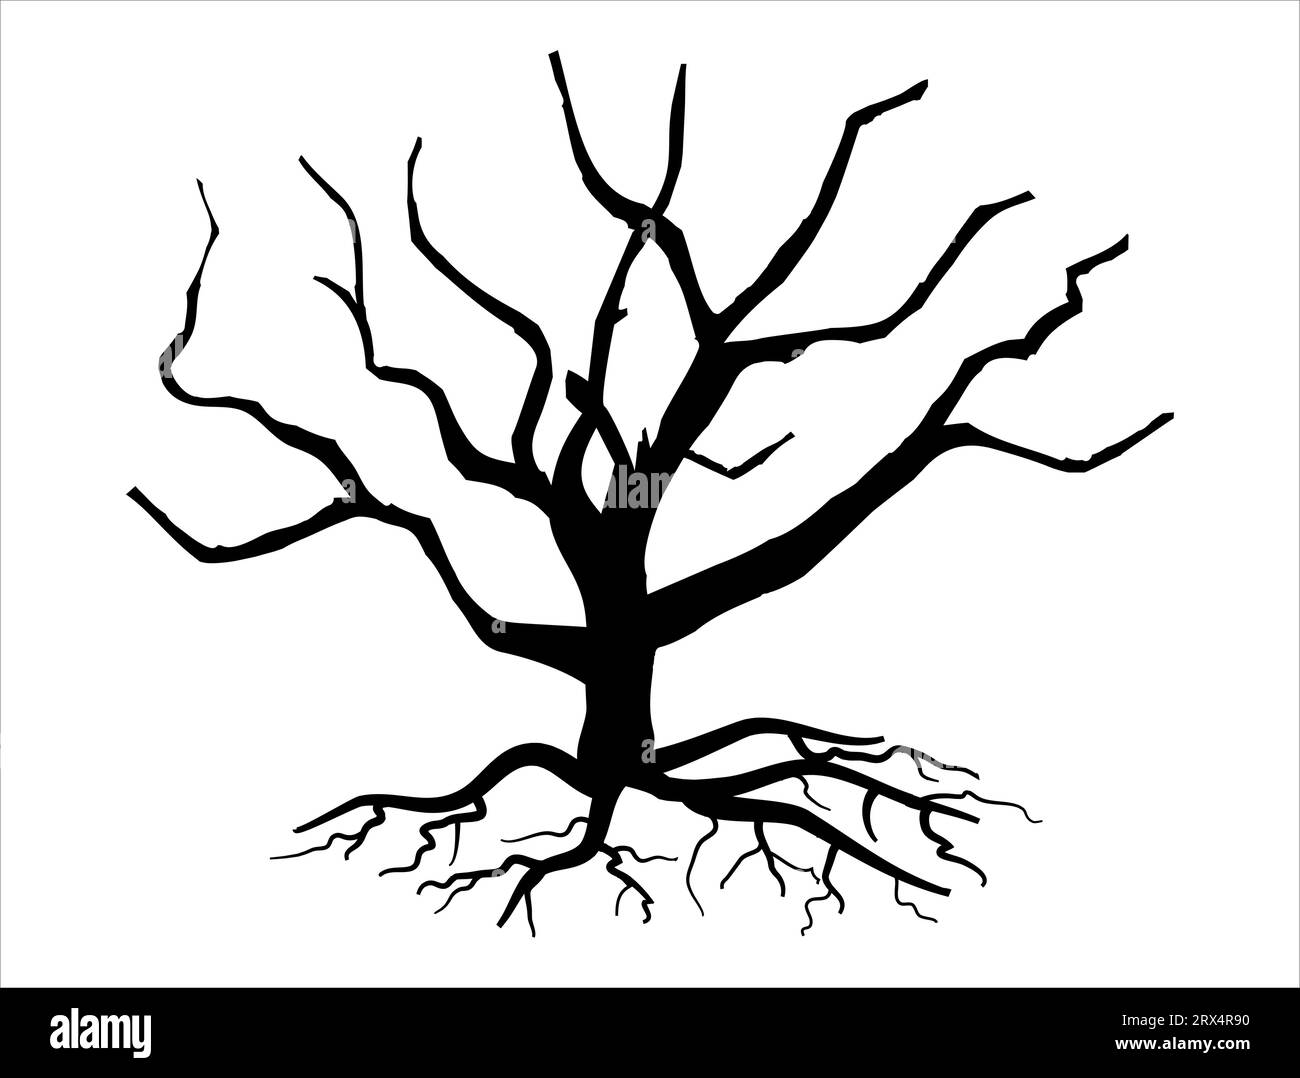 Sfondo bianco con grafica vettoriale della silhouette albero morto Illustrazione Vettoriale